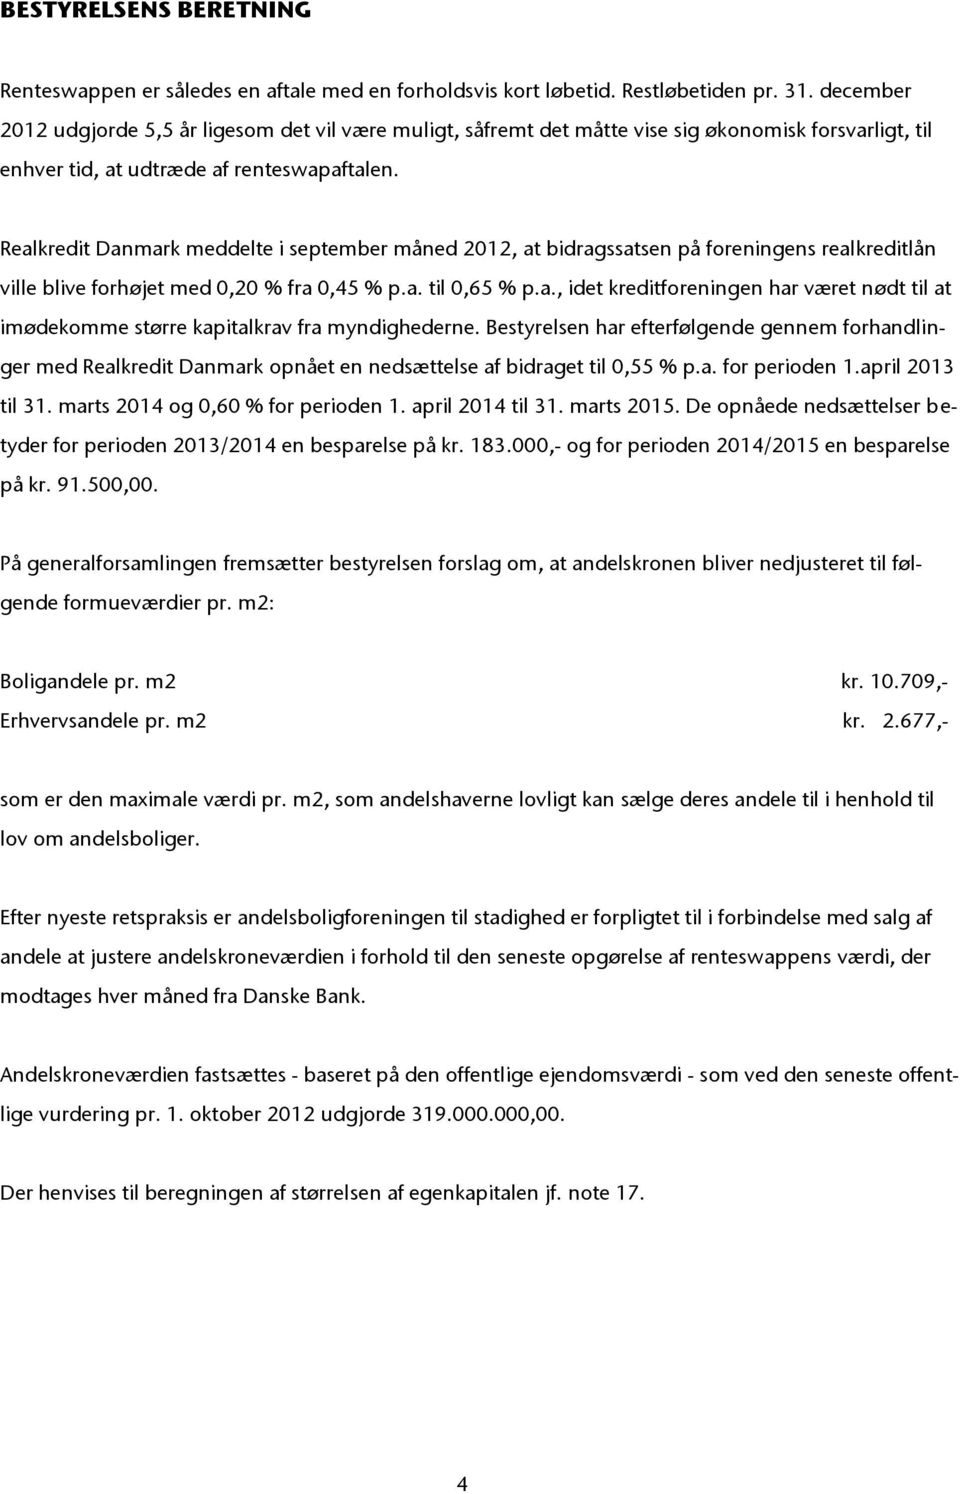 Realkredit Danmark meddelte i september måned 2012, at bidragssatsen på foreningens realkreditlån ville blive forhøjet med 0,20 % fra 0,45 % p.a. til 0,65 % p.a., idet kreditforeningen har været nødt til at imødekomme større kapitalkrav fra myndighederne.